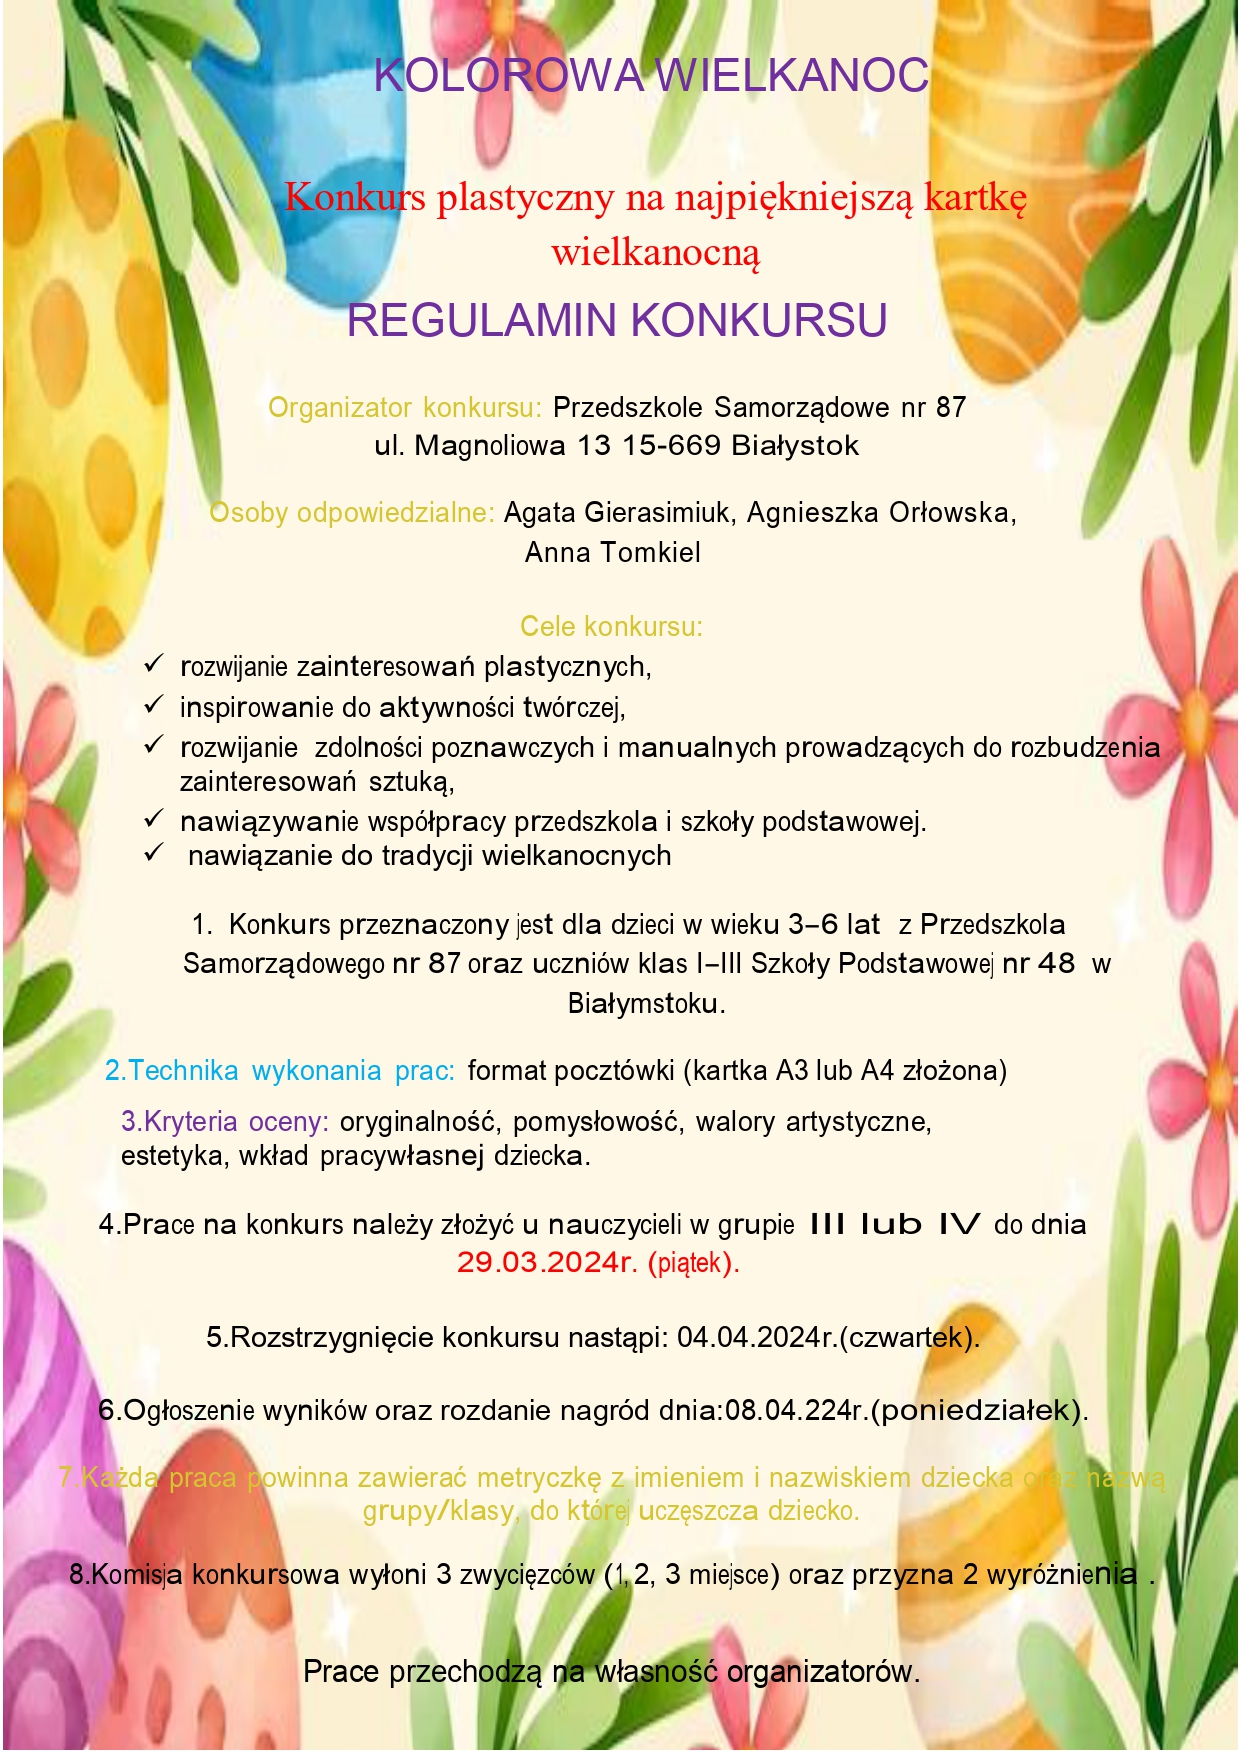 Kolorowa Wielkanoc. Plakat informacyjny o konkursie na kartkę wielkanocną._page-0001.jpg